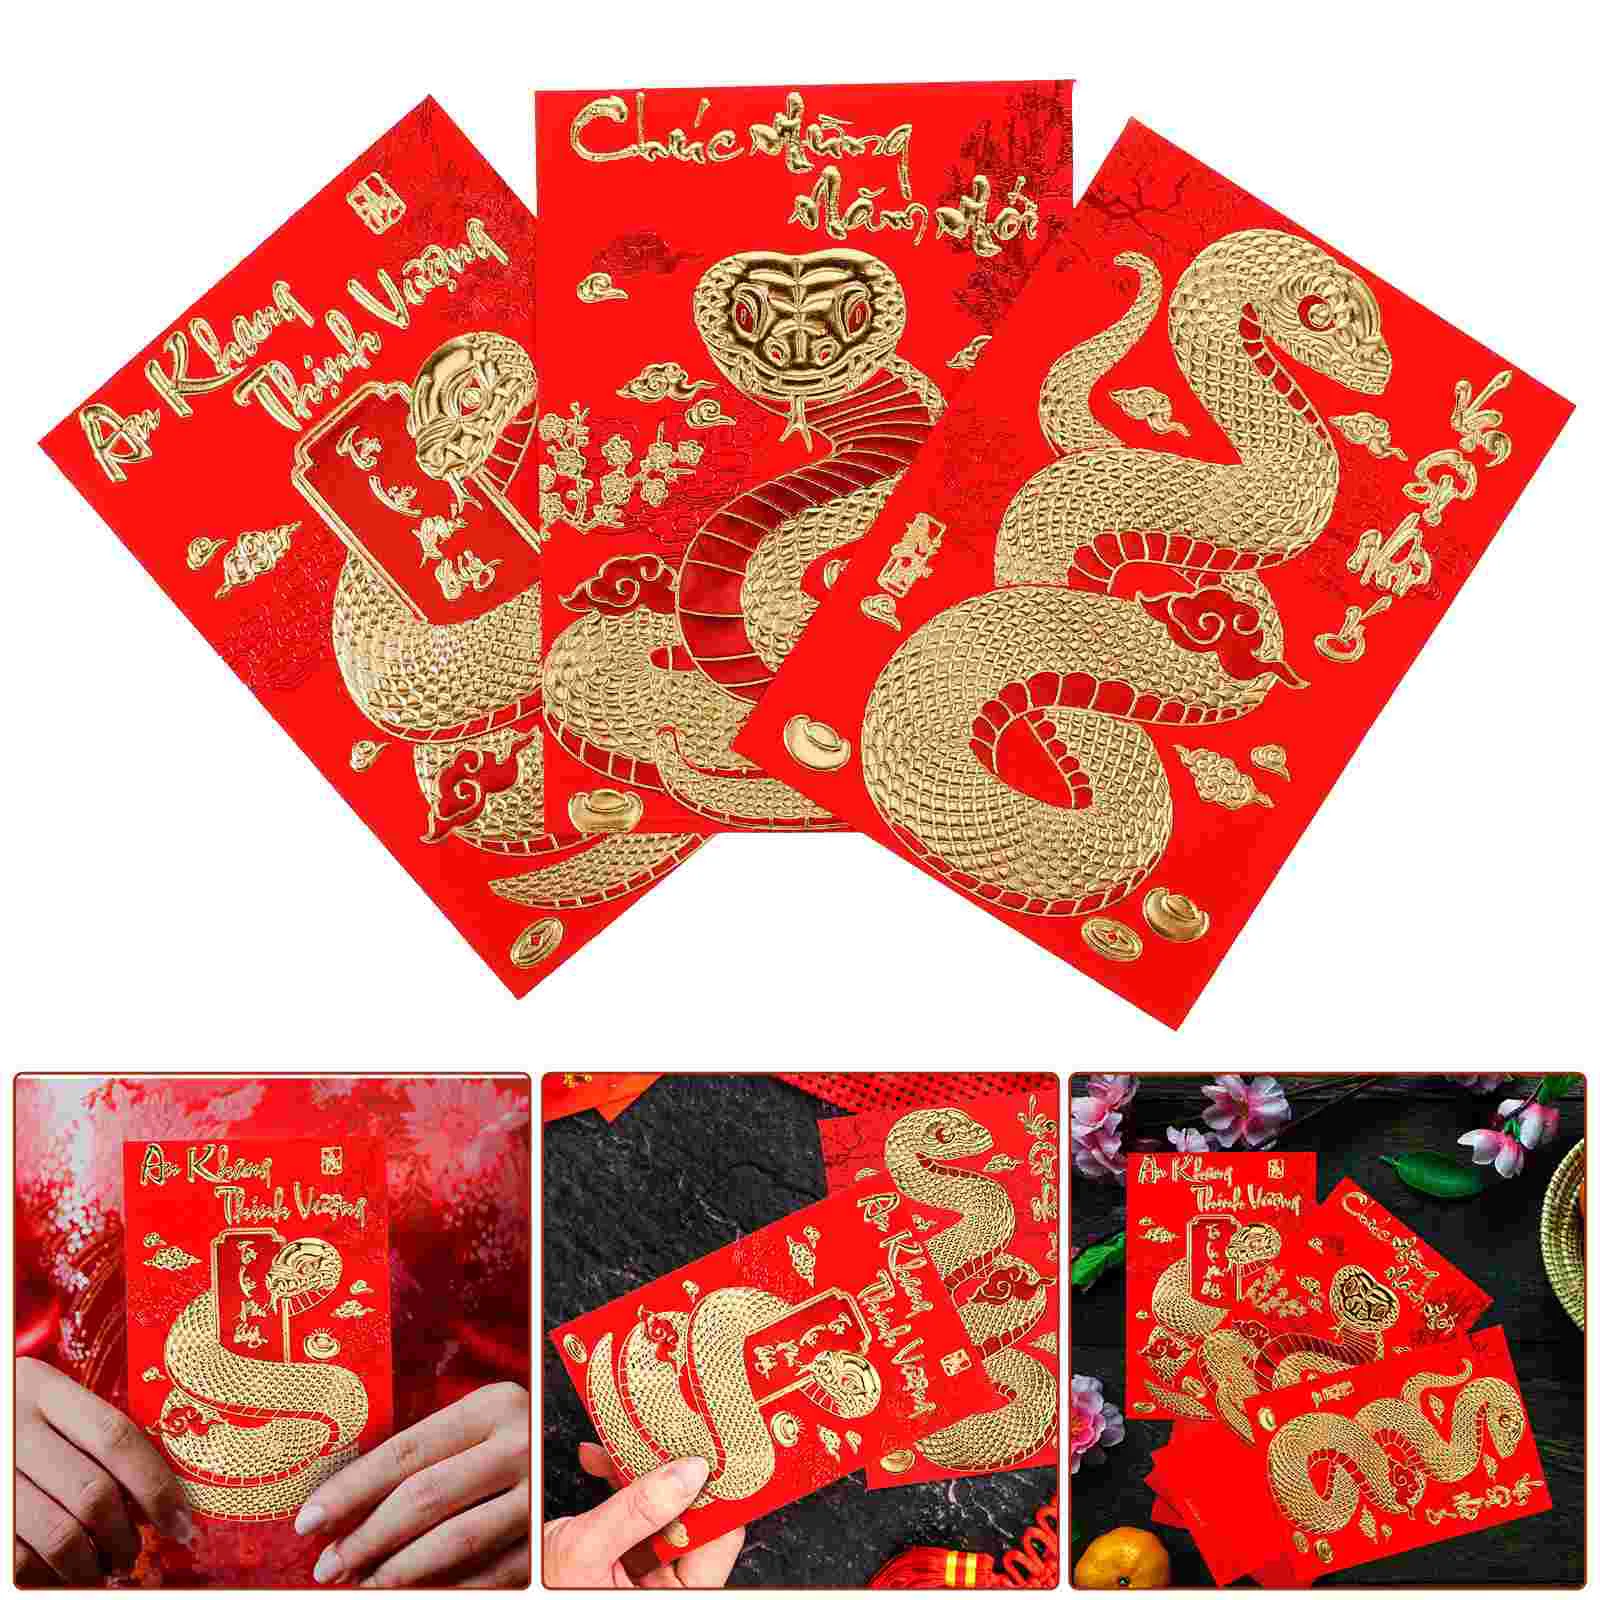 

18 Pcs Year of The Snake Spring Festival Red Envelope Vietnamese Money Pocket New Emvelopes Gift Envelopes Packet